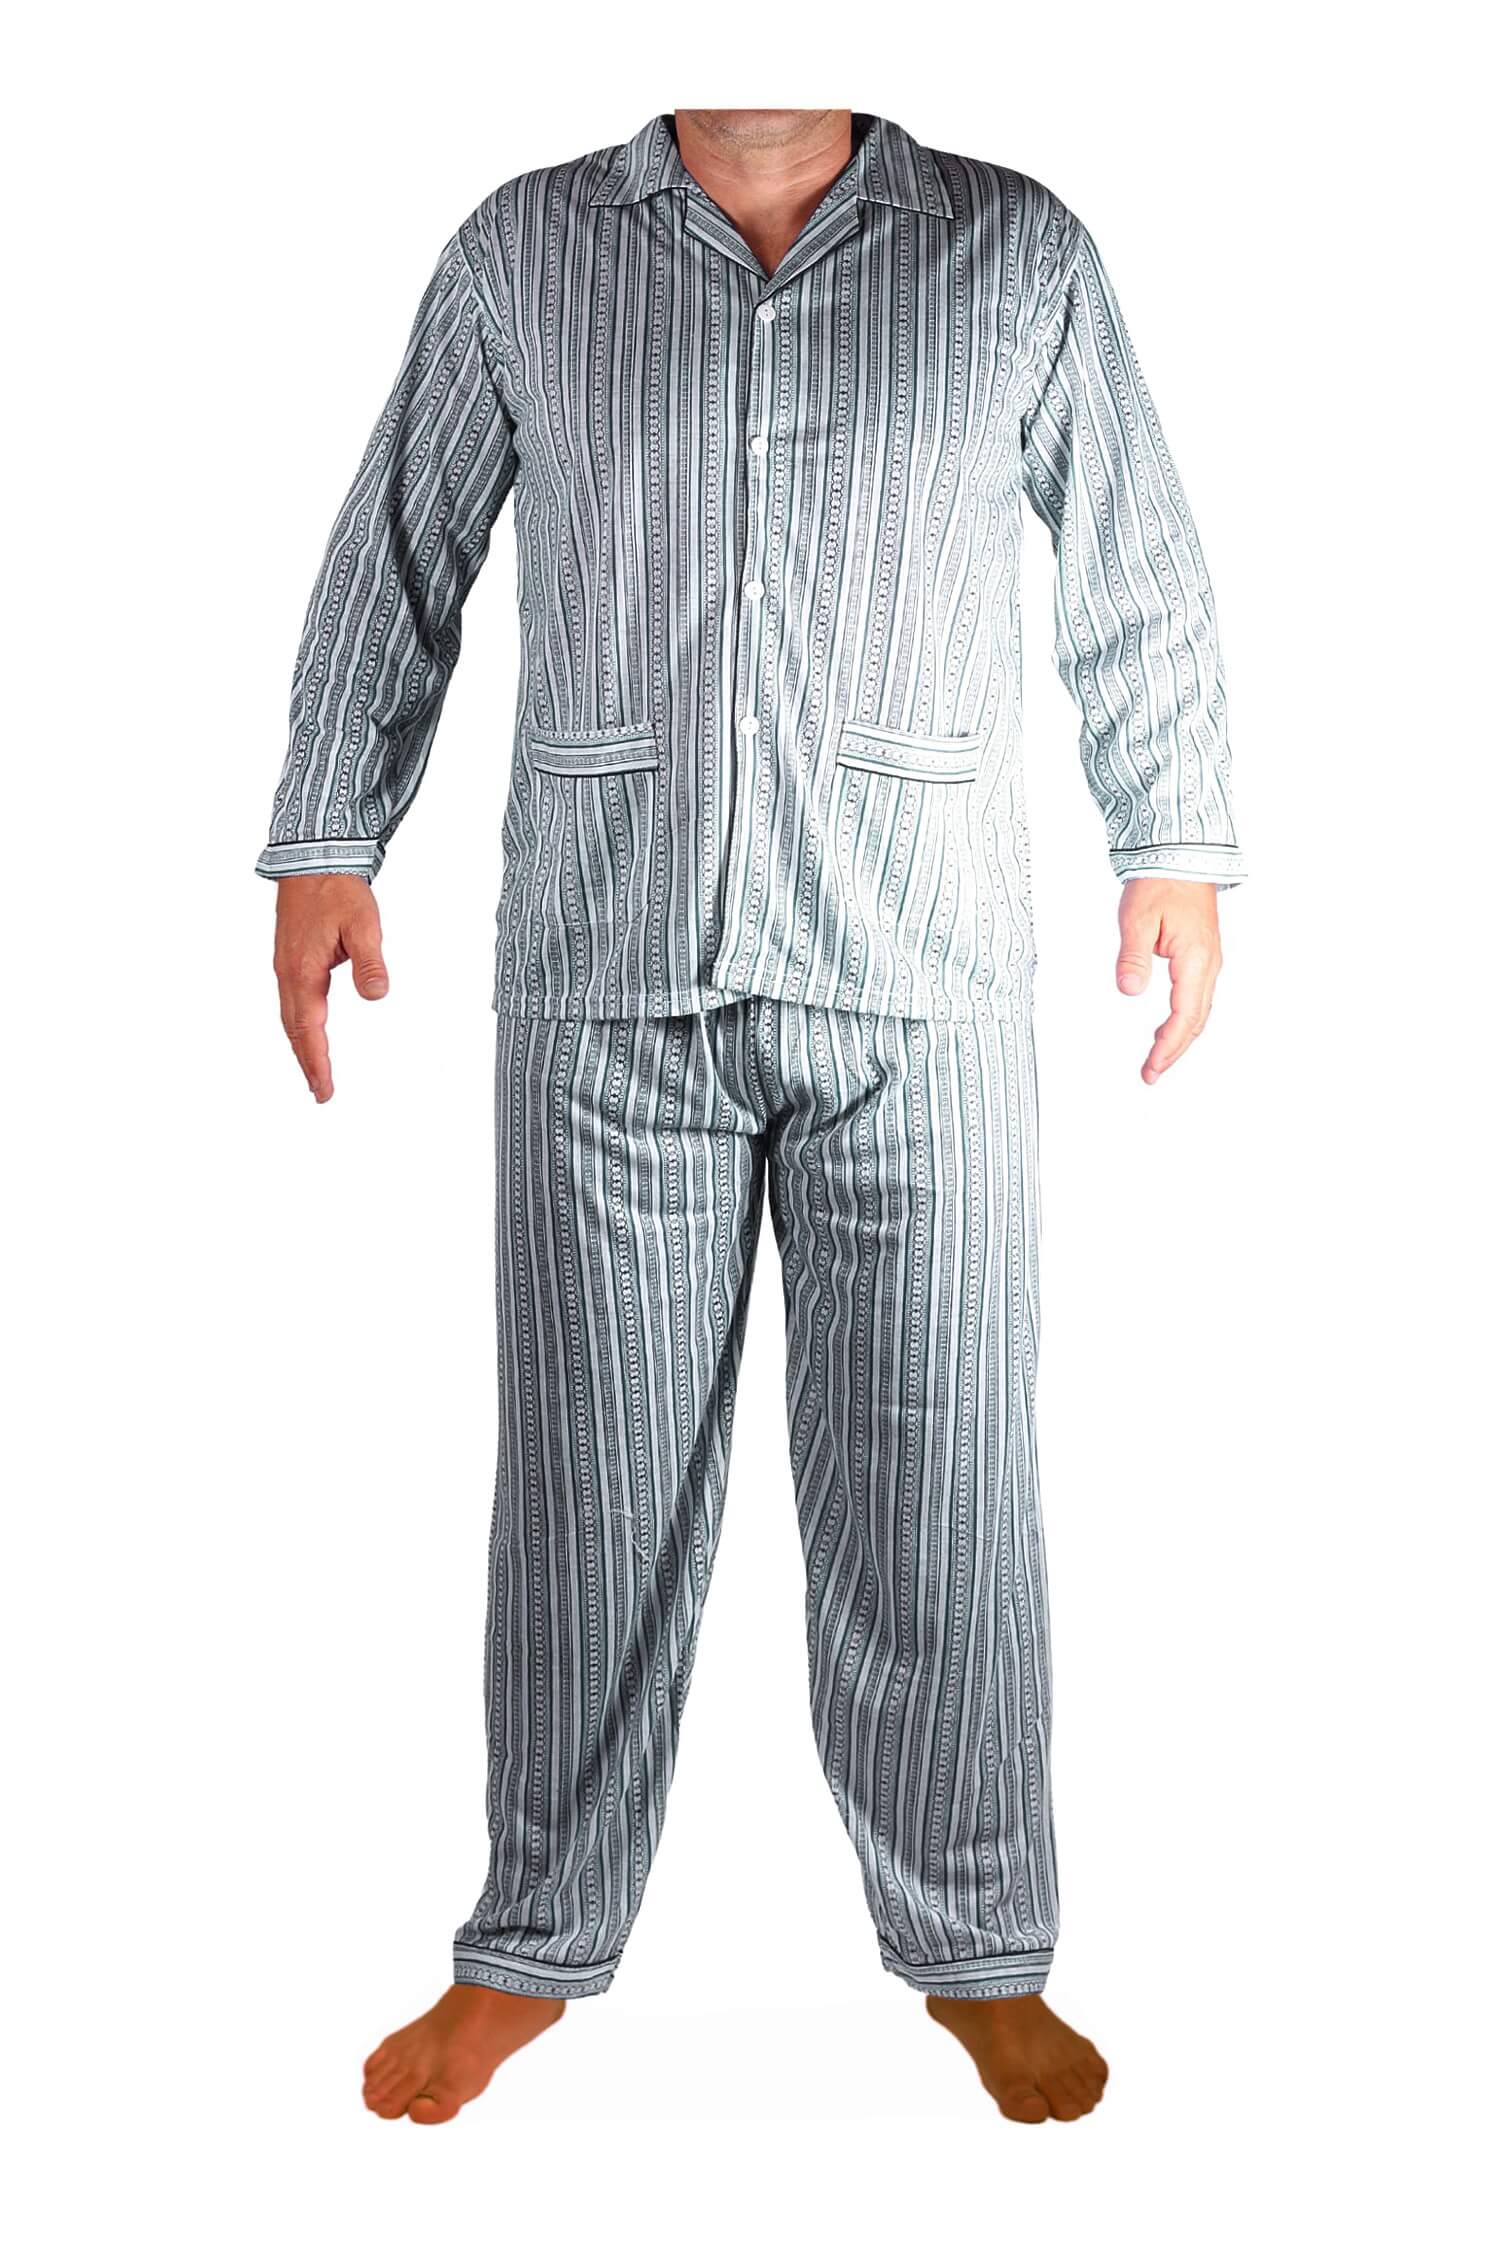 Prokop pánské pyžamo na knoflíky L khaki